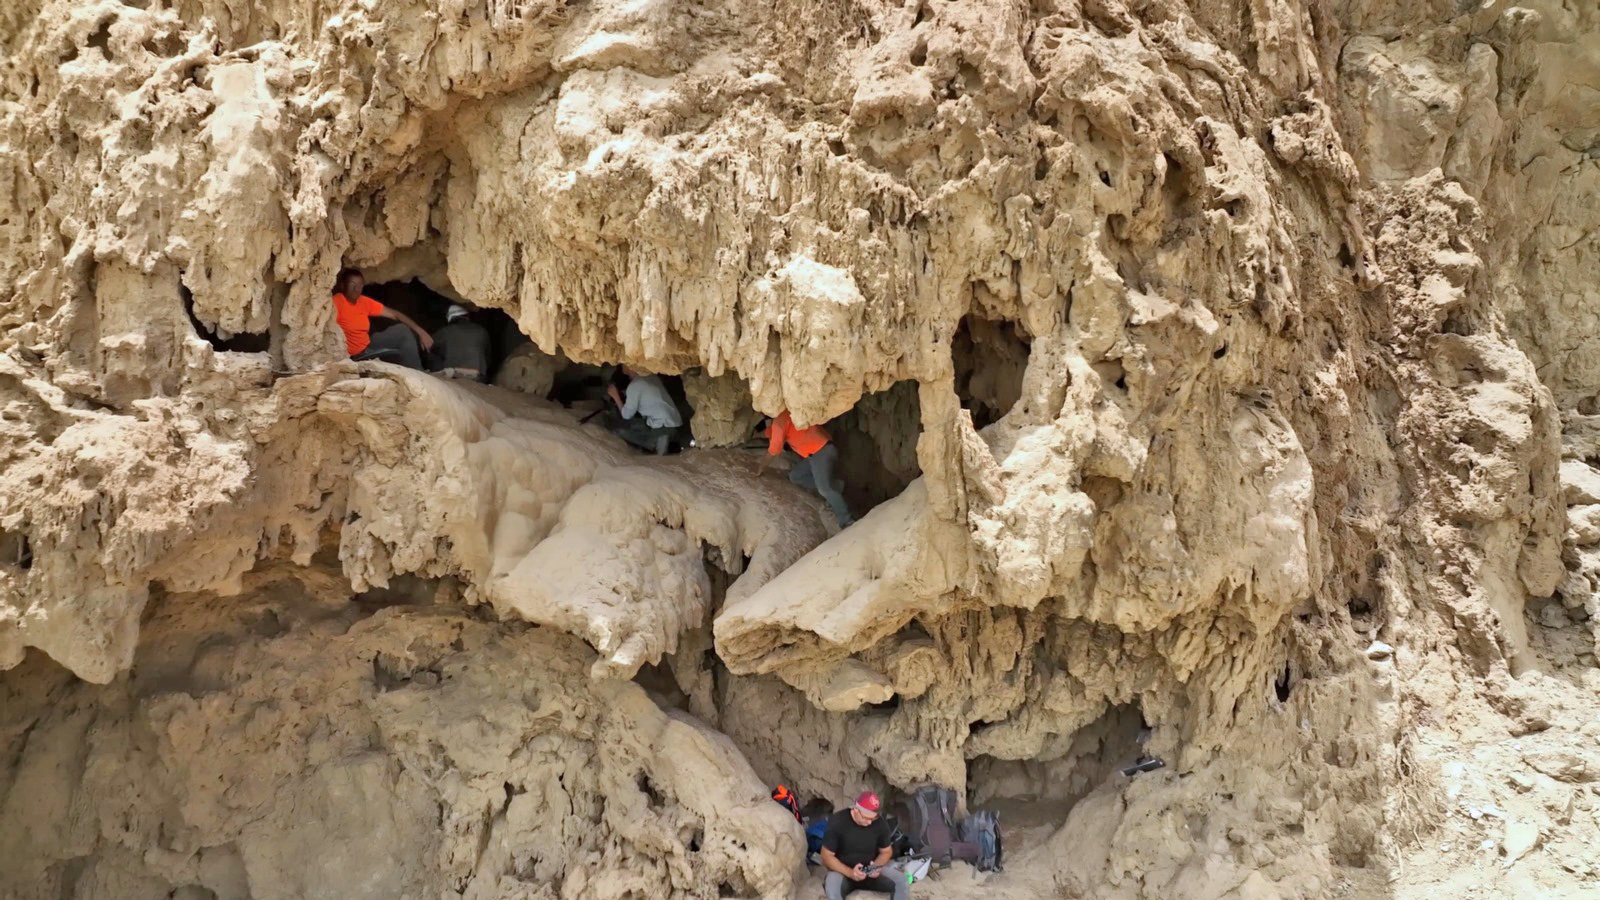 המערה שבה נמצאו כלי הנשק (צילום: אמיל אלג'ם, רשות העתיקות)